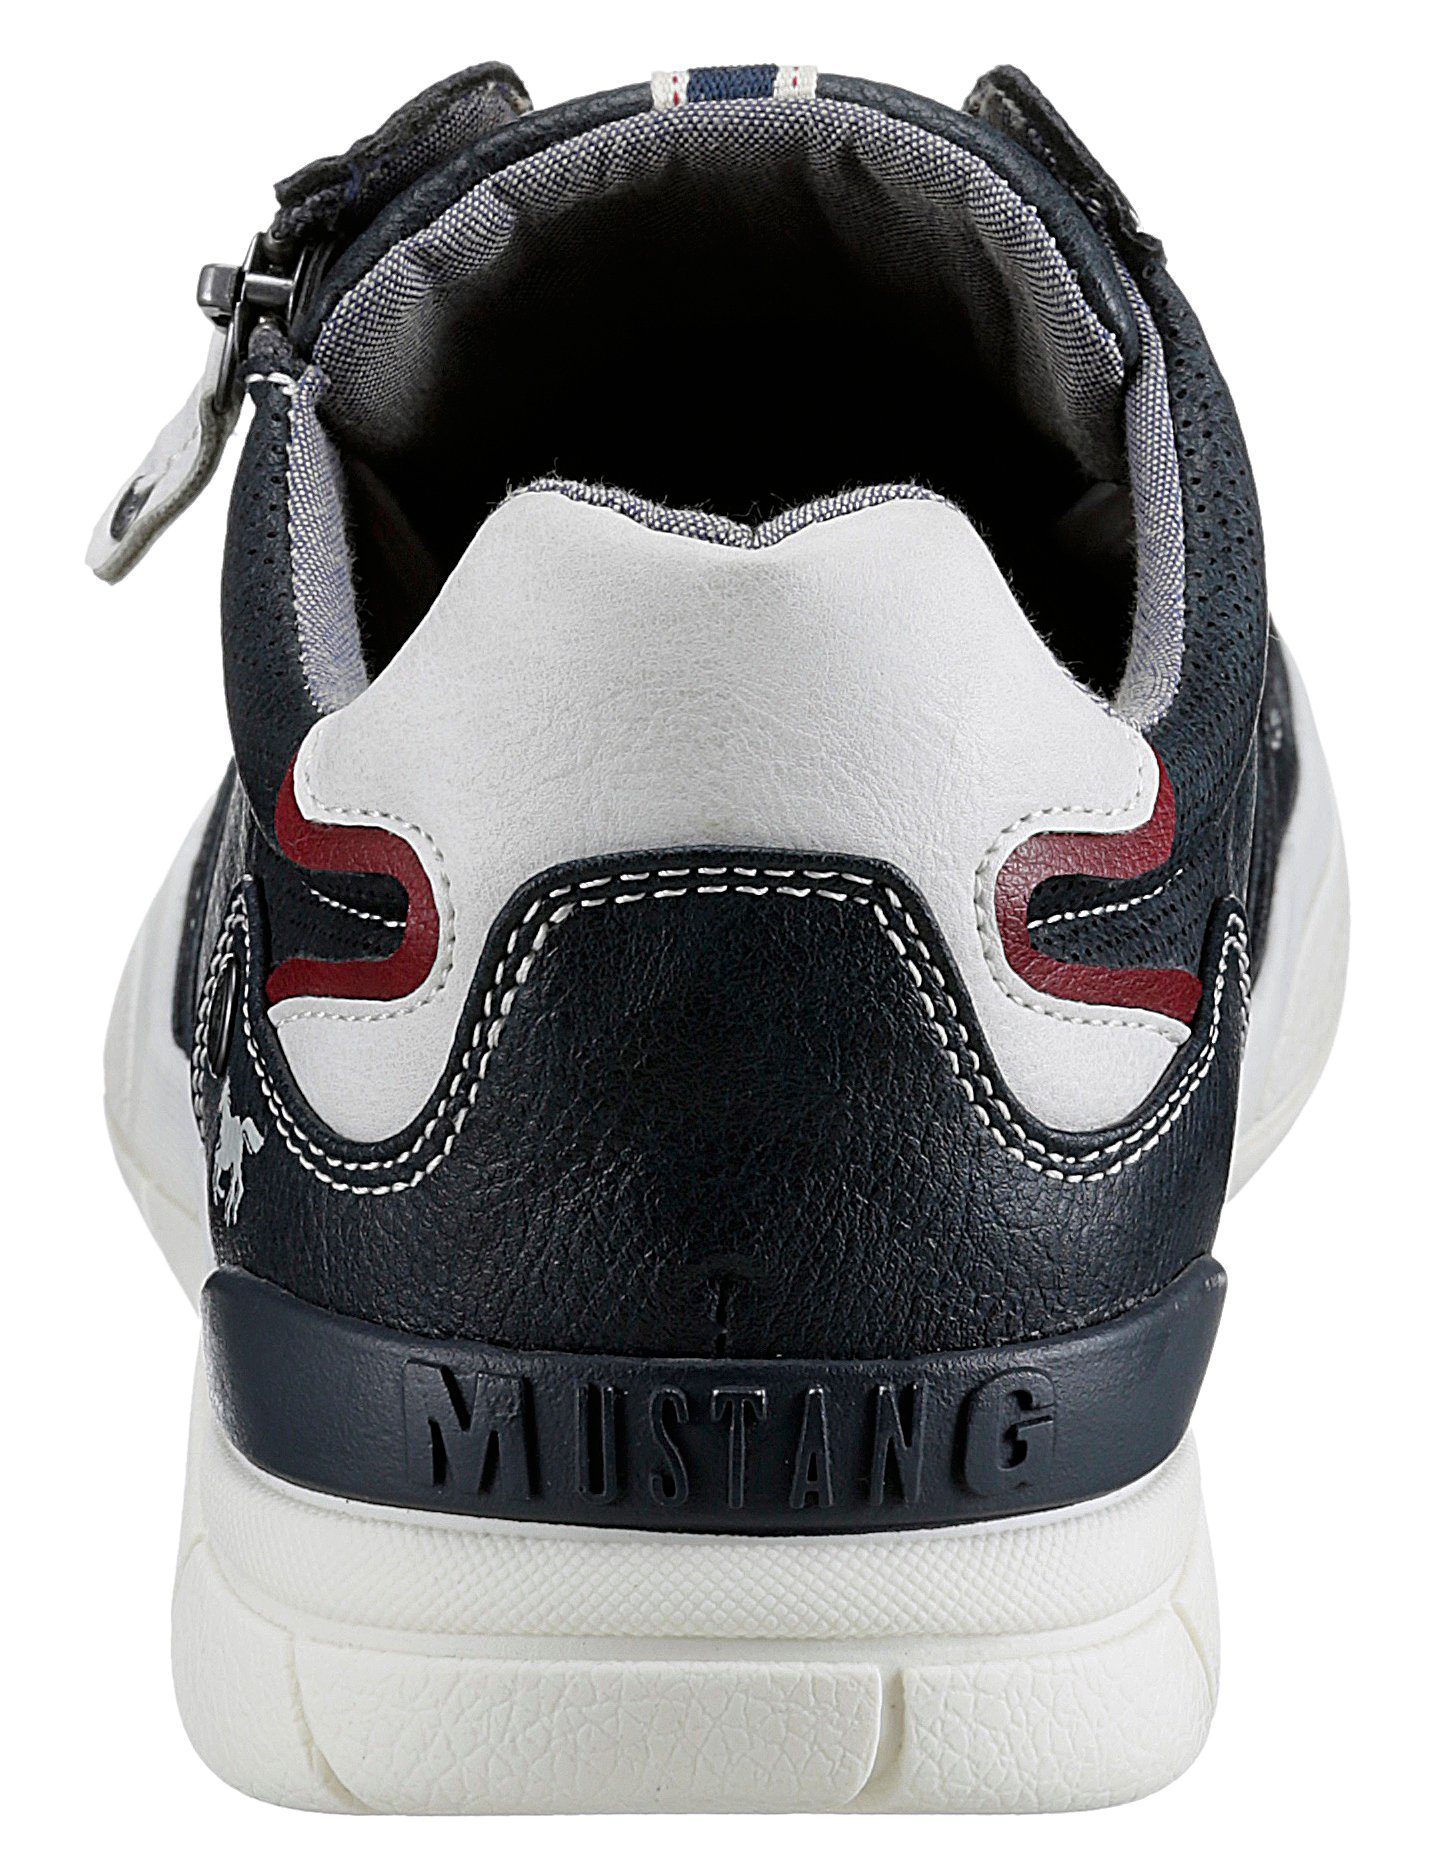 Mustang Sneaker Reißverschluss mit seitlichem navy-offwhite Shoes